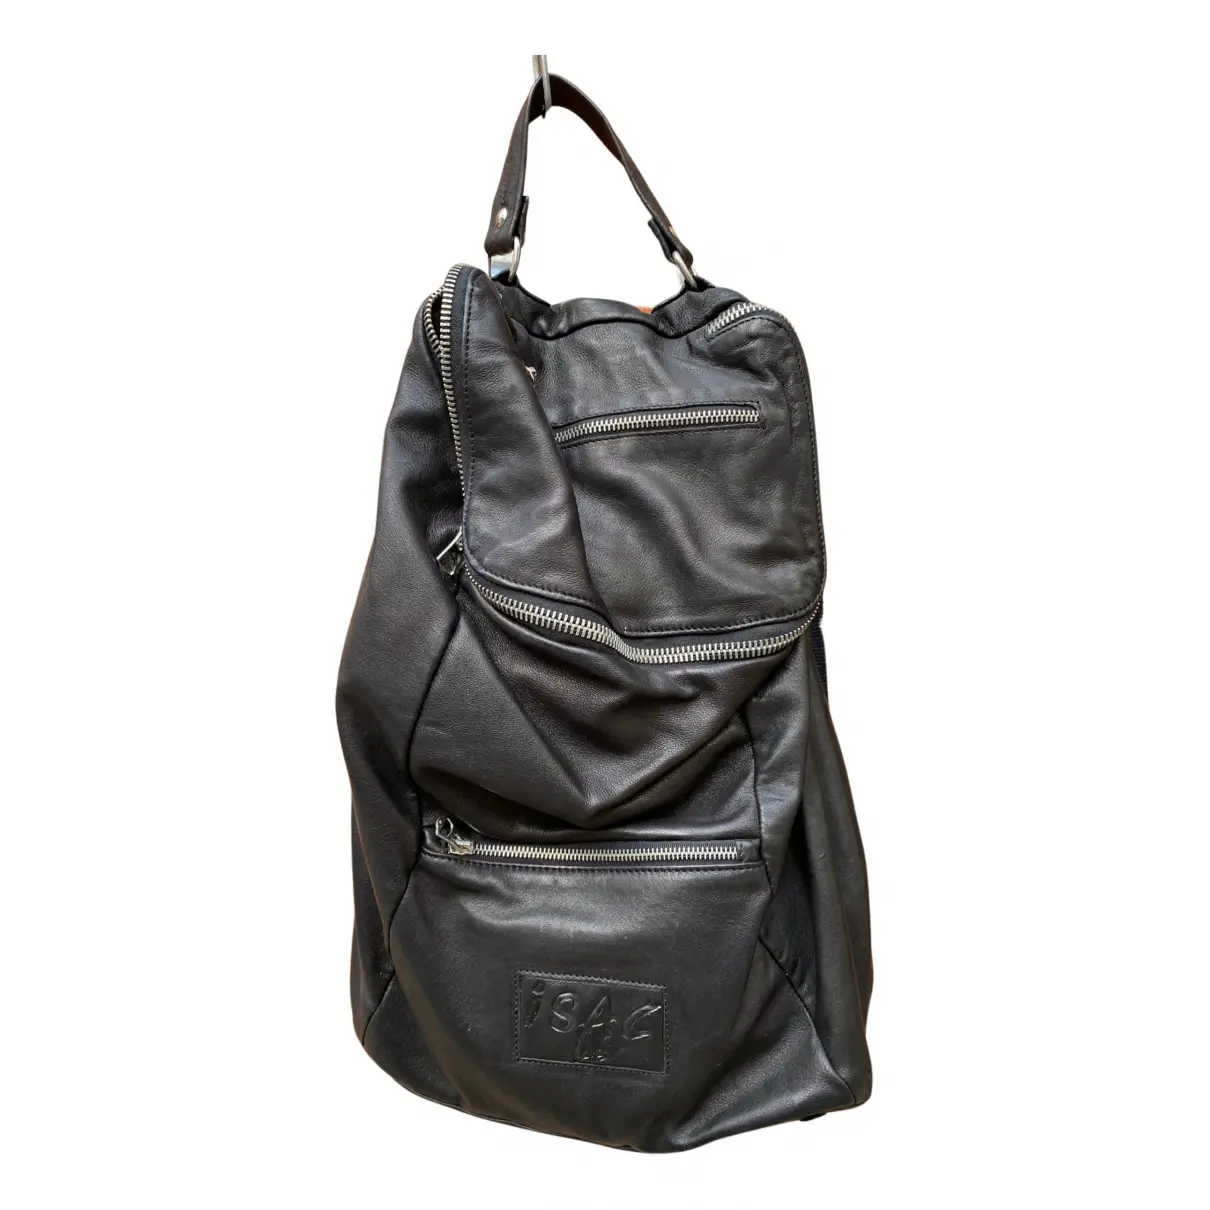 Leather bag 0711 Tbilisi